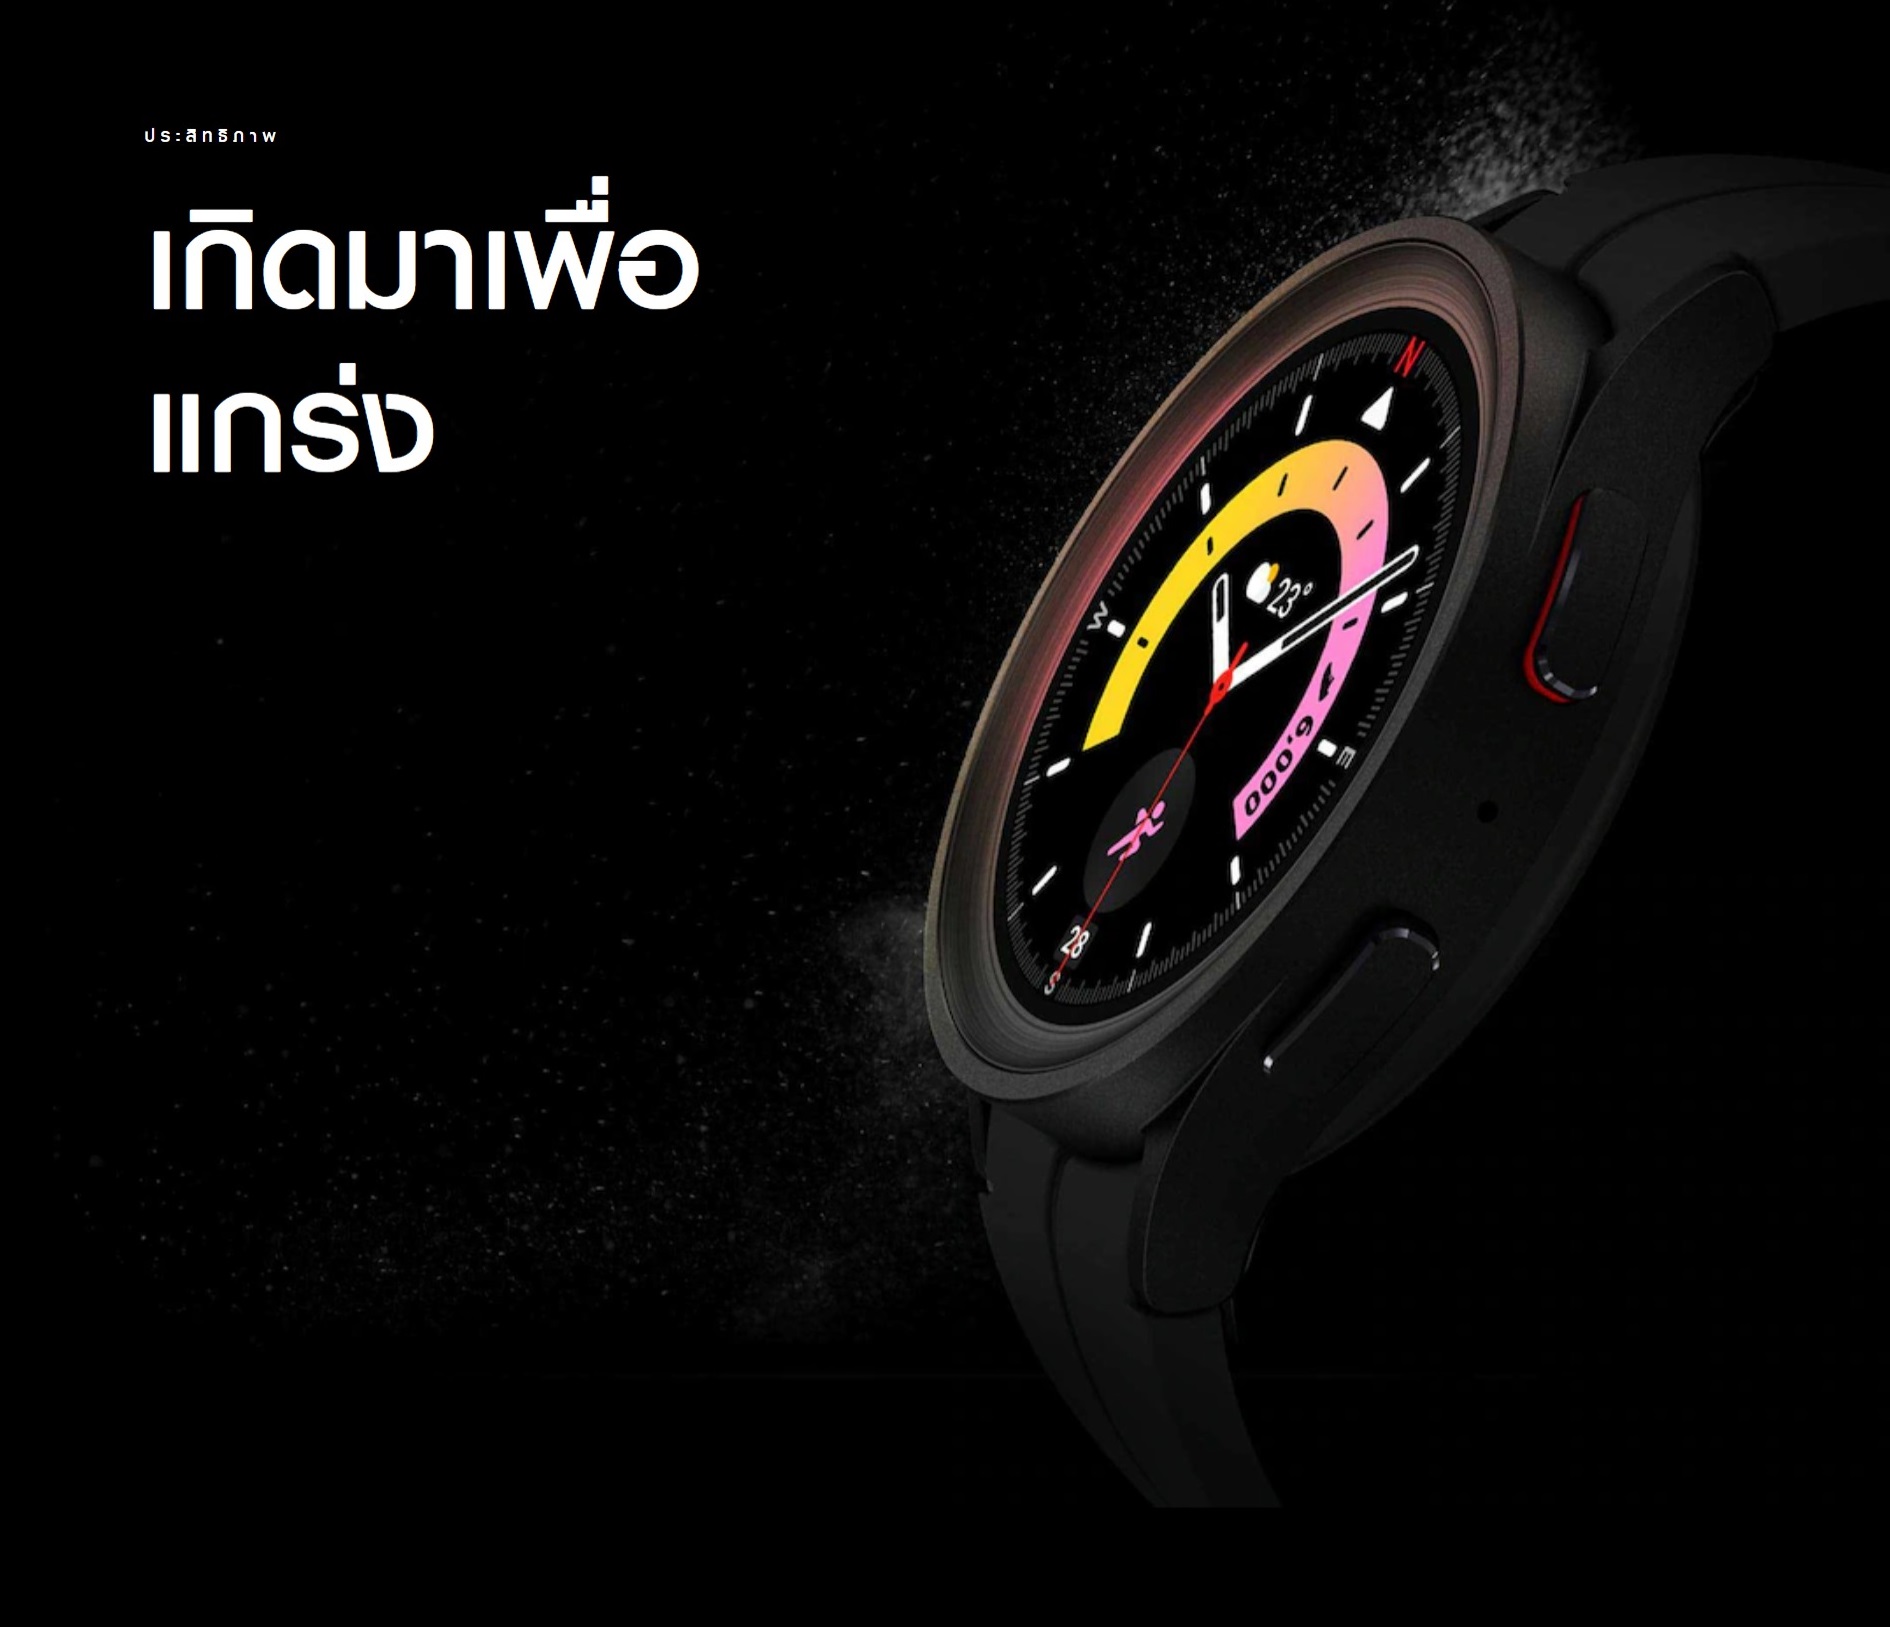 ข้อมูลเพิ่มเติมของ Samsung Galaxy Watch 5  Pro Blth